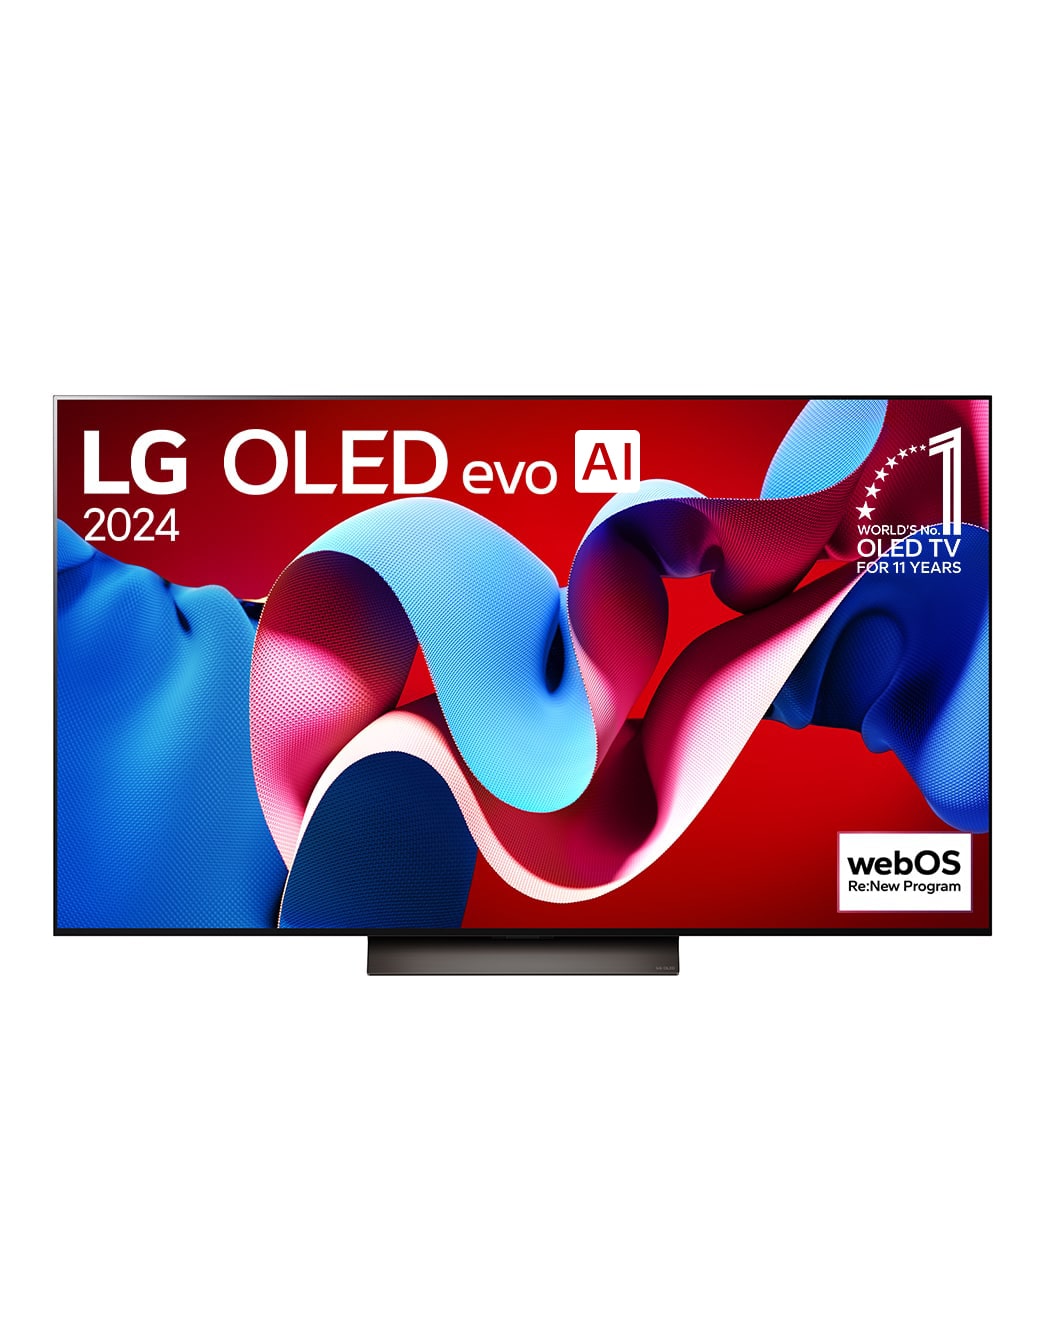 Вид спереди на телевизор LG OLED evo, OLED C4, logo эмблемы «OLED №1 в течение 11 лет» и logo программы webOS Re:New на экране